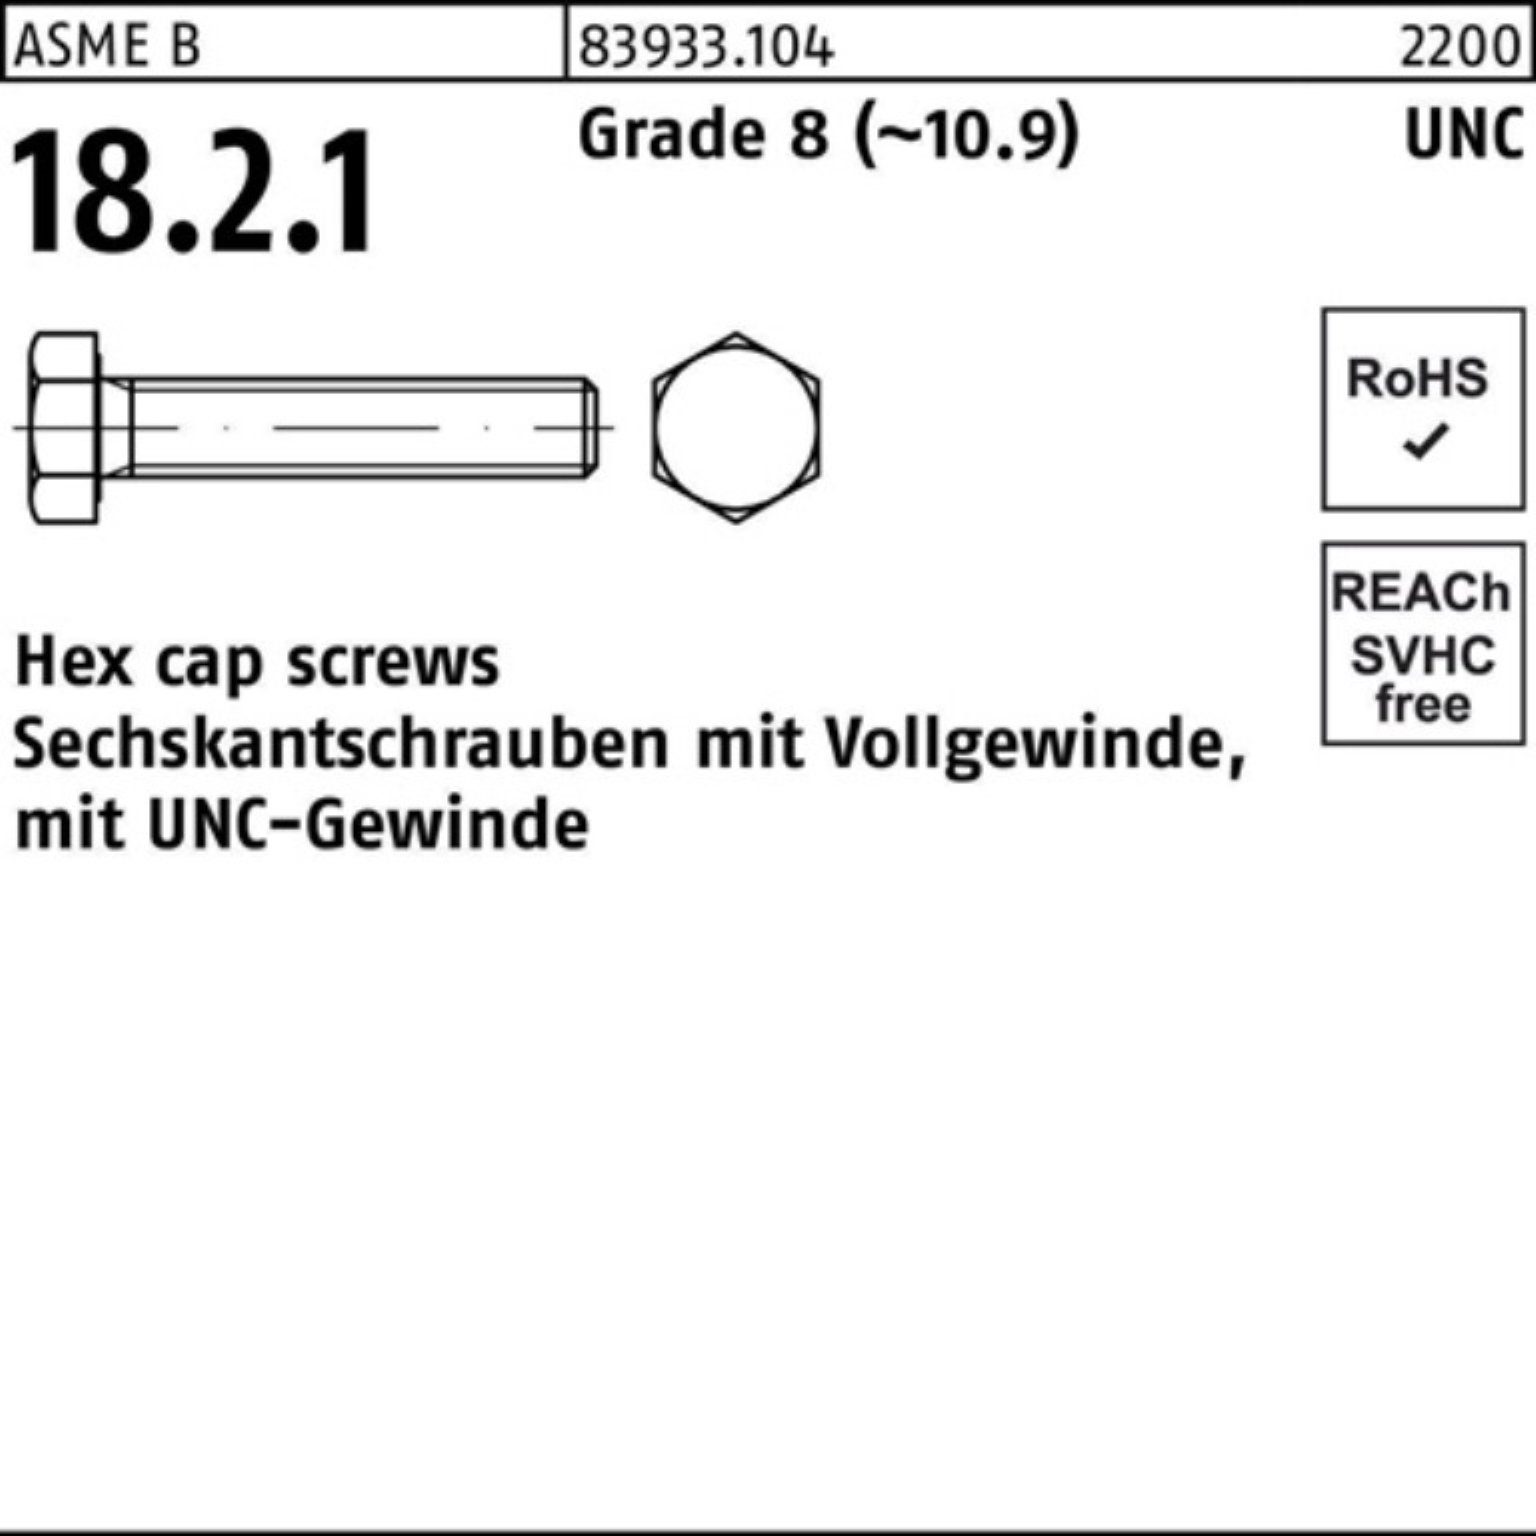 Reyher Sechskantschraube 100er Pack Sechskantschraube R 83933 UNC-Gewinde VG 1/4x 1/2 Grade 8